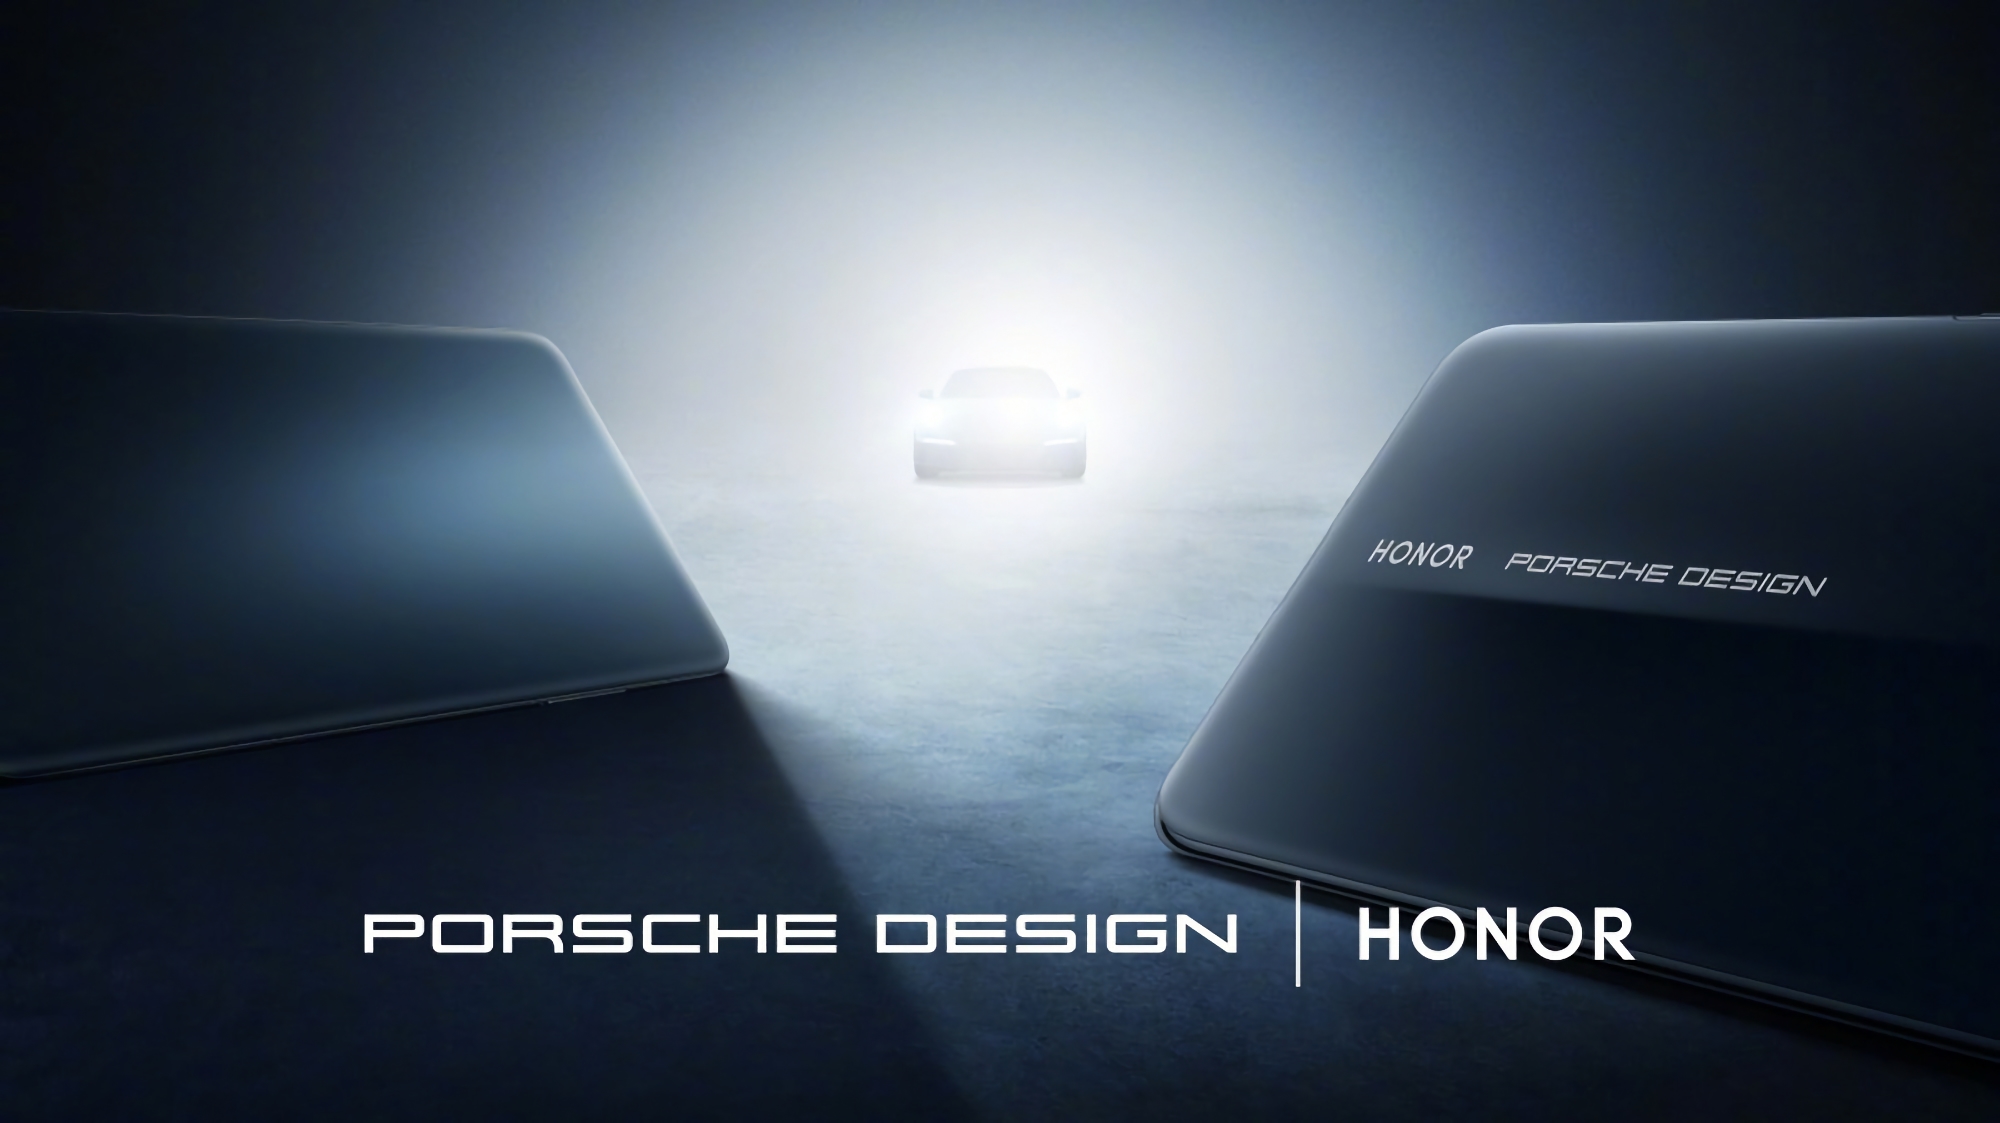 To już oficjalne: Honor zaprezentuje Magic 6 RSR Porsche Design podczas premiery 18 marca.